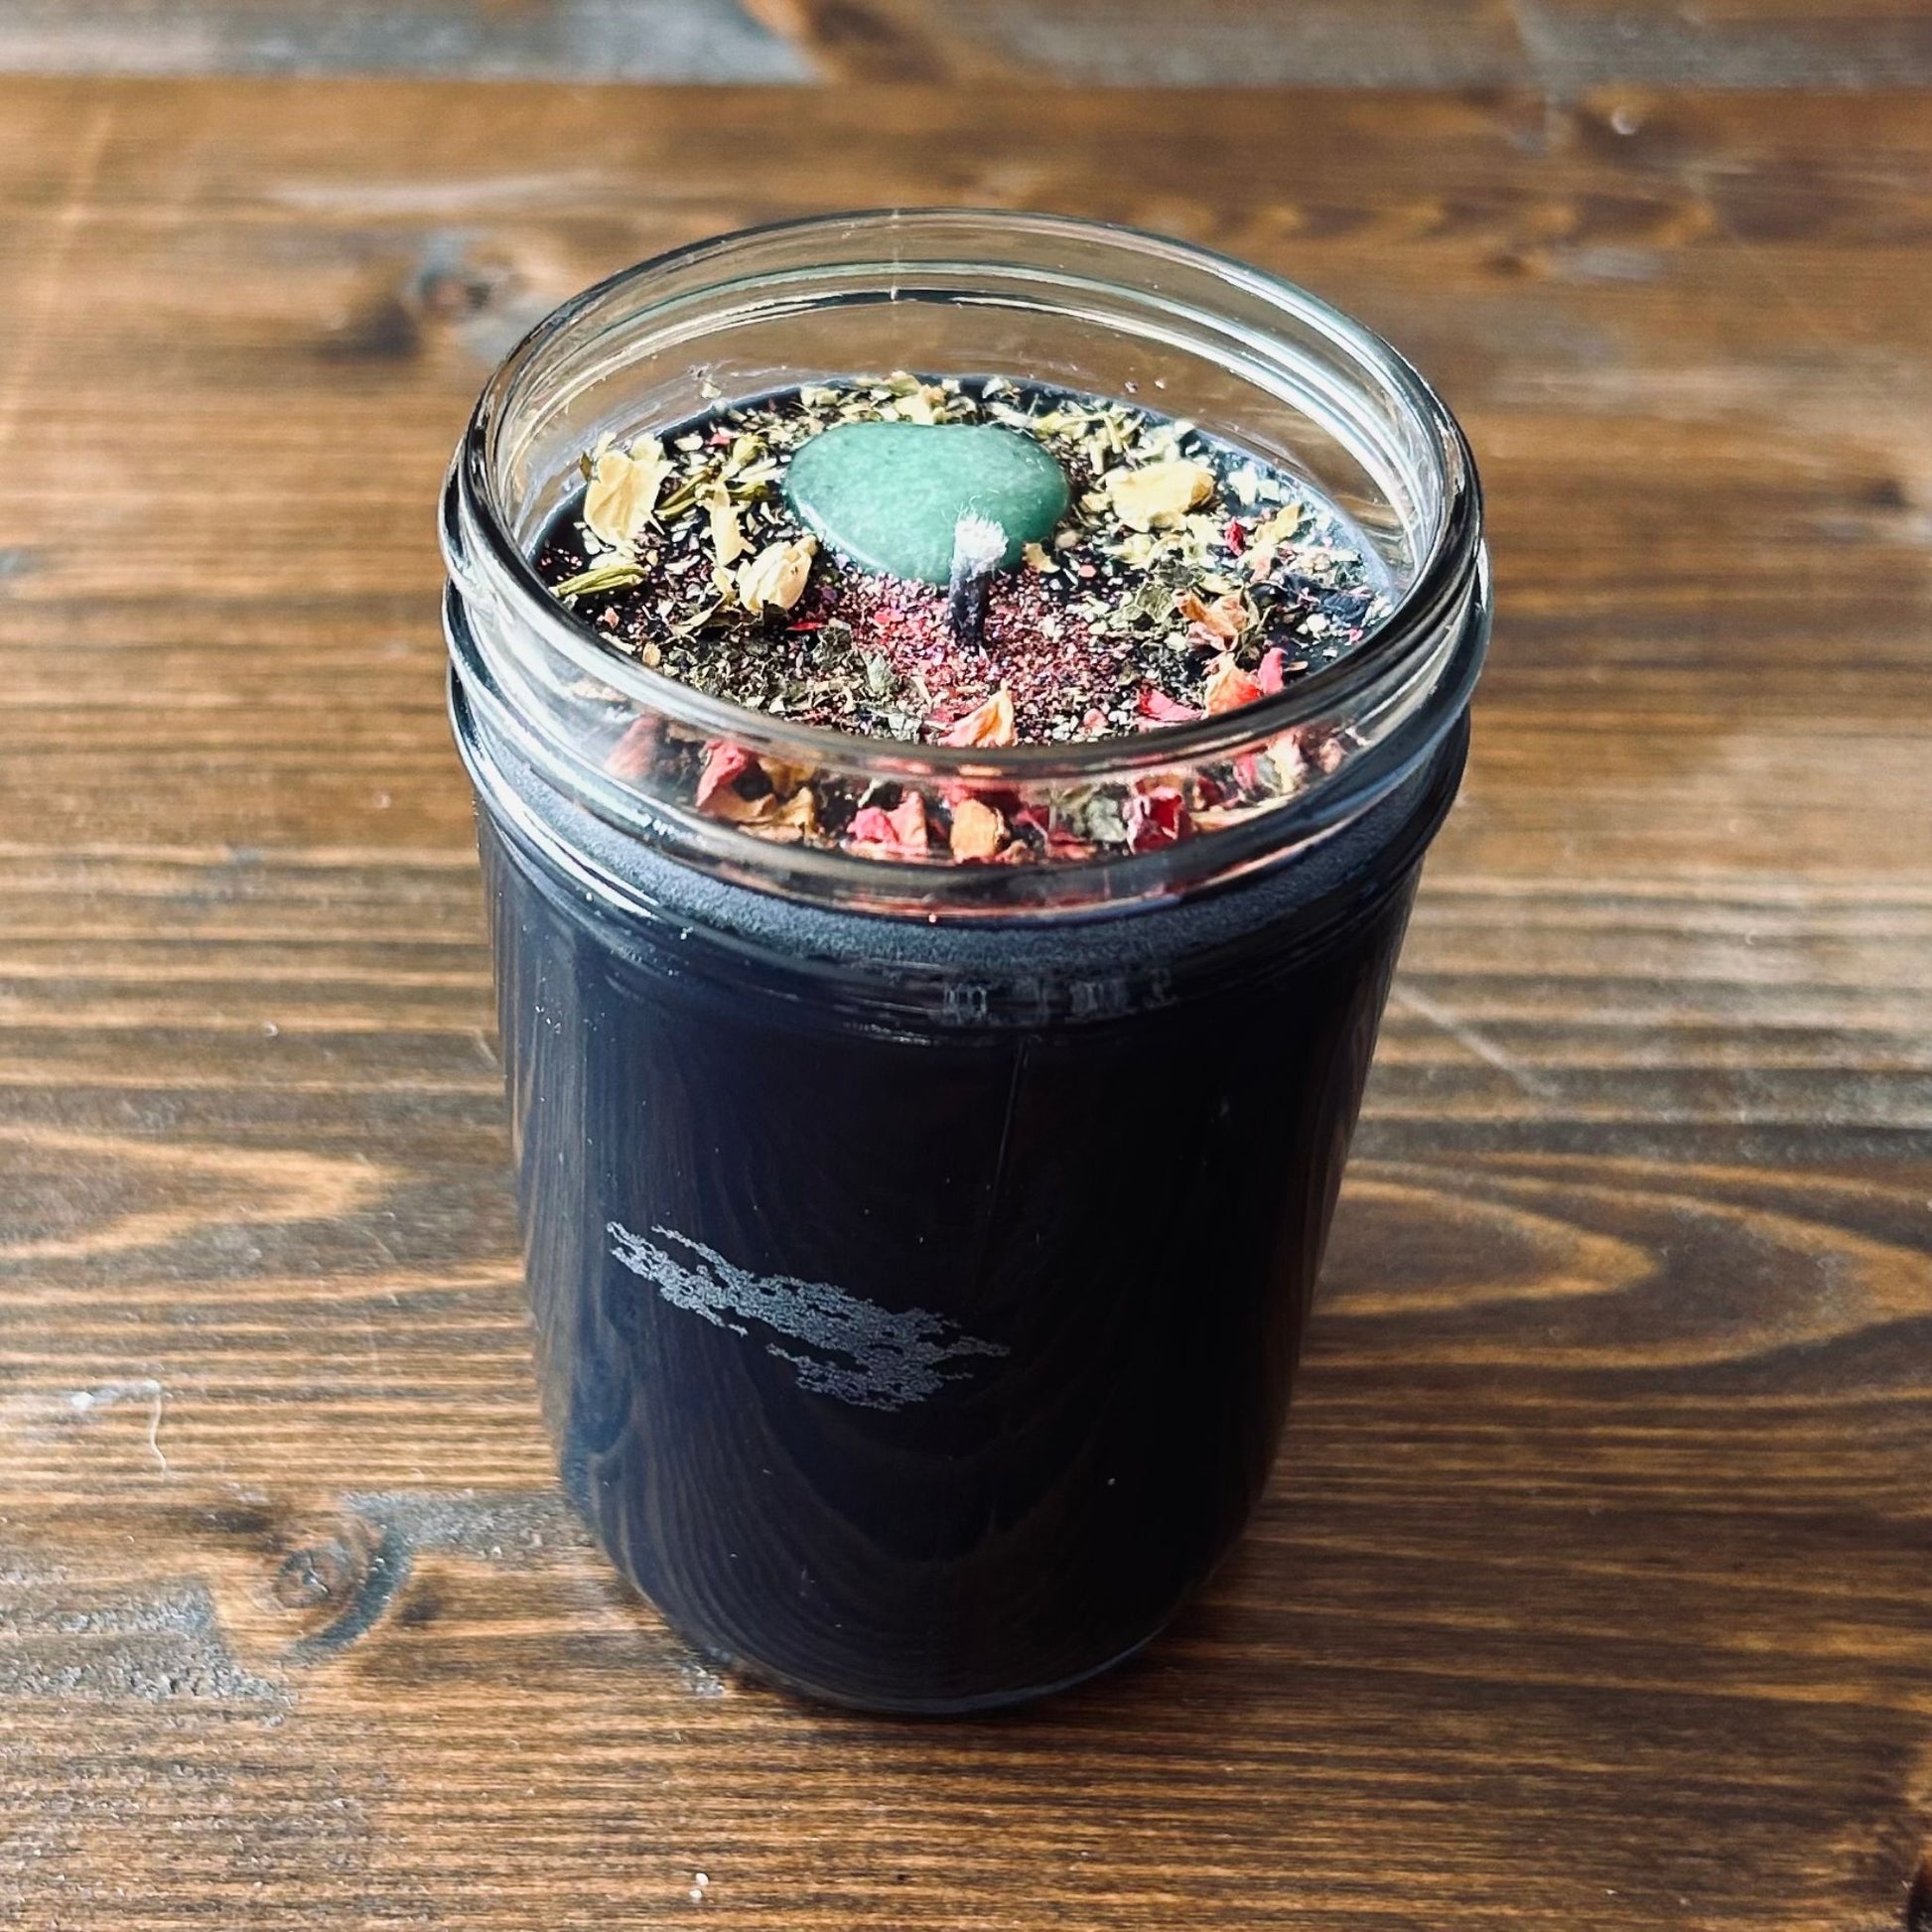 Frankincense and Myrrh- 8oz Mason Jar Soy Candle